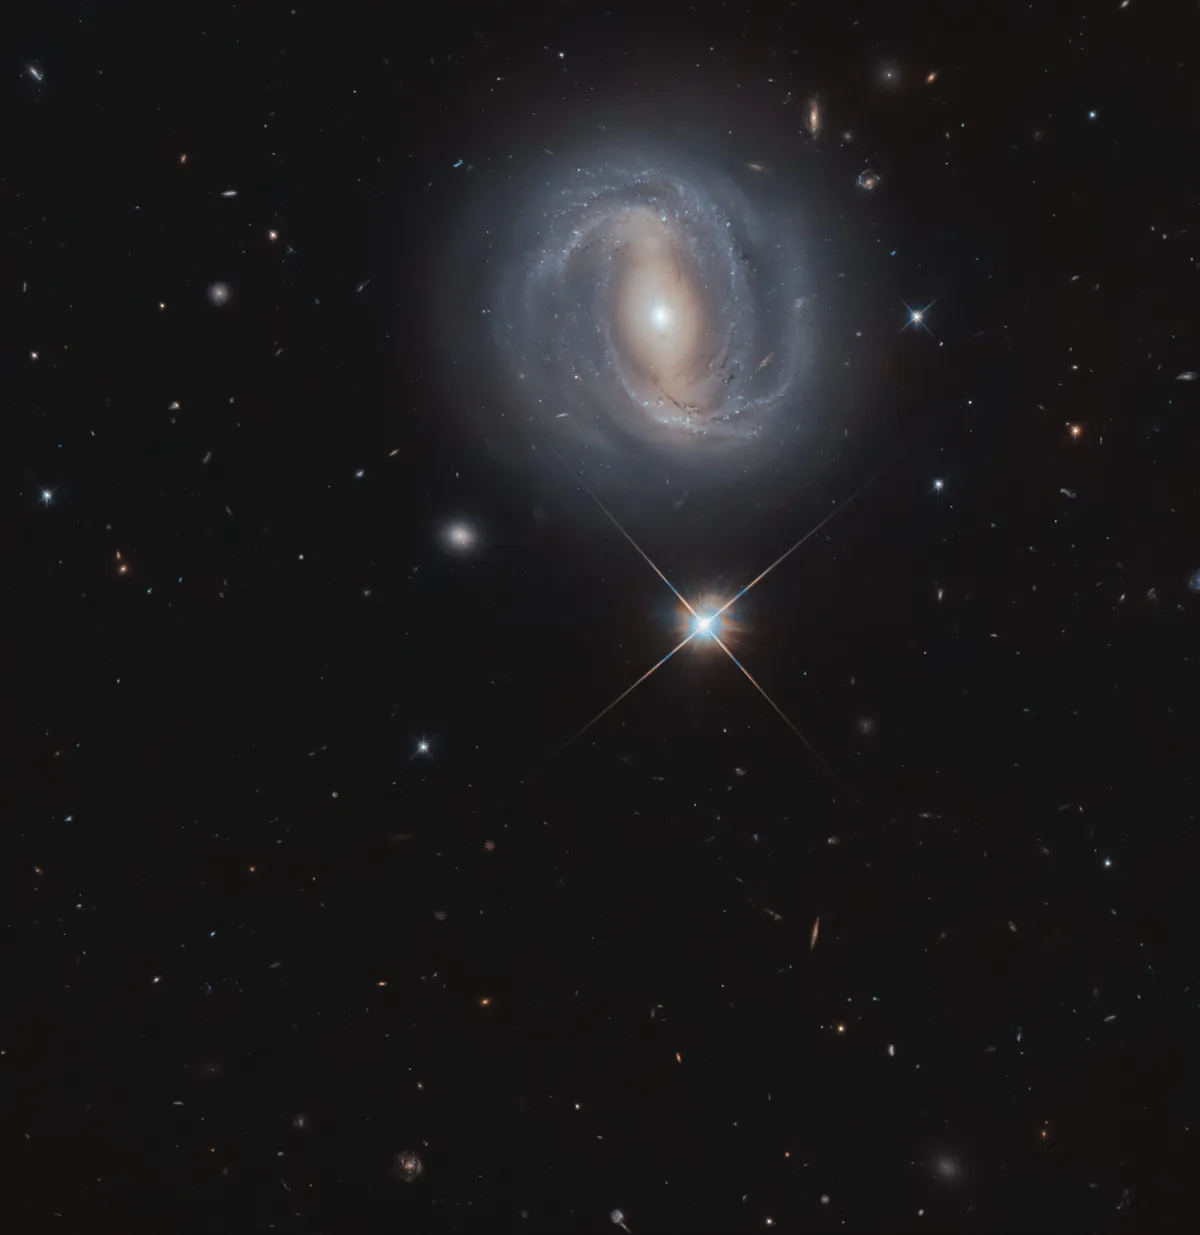 Barred spiral galaxy NGC 4907 and a Milky Way star. Credit ESA/Hubble & NASA, M. Gregg